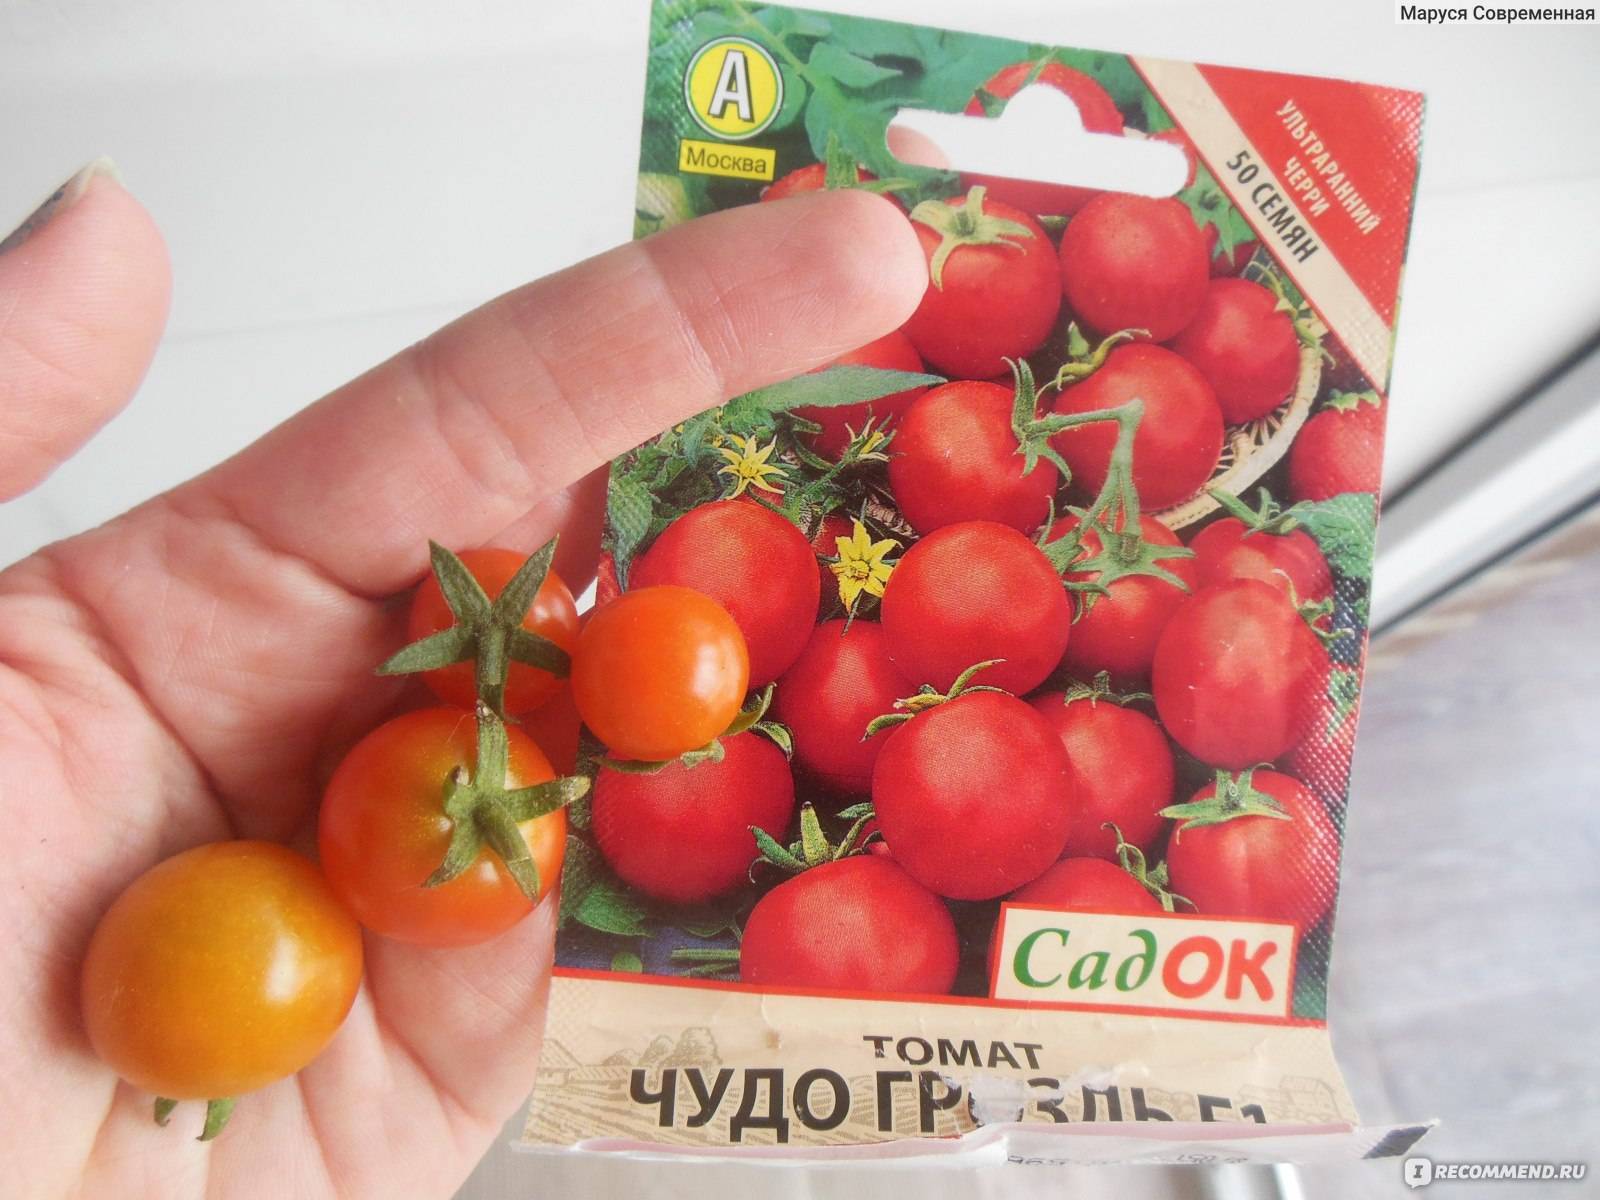 Великолепные сладкие плоды целый год — томат чудо гроздь f1: описание и отзывы